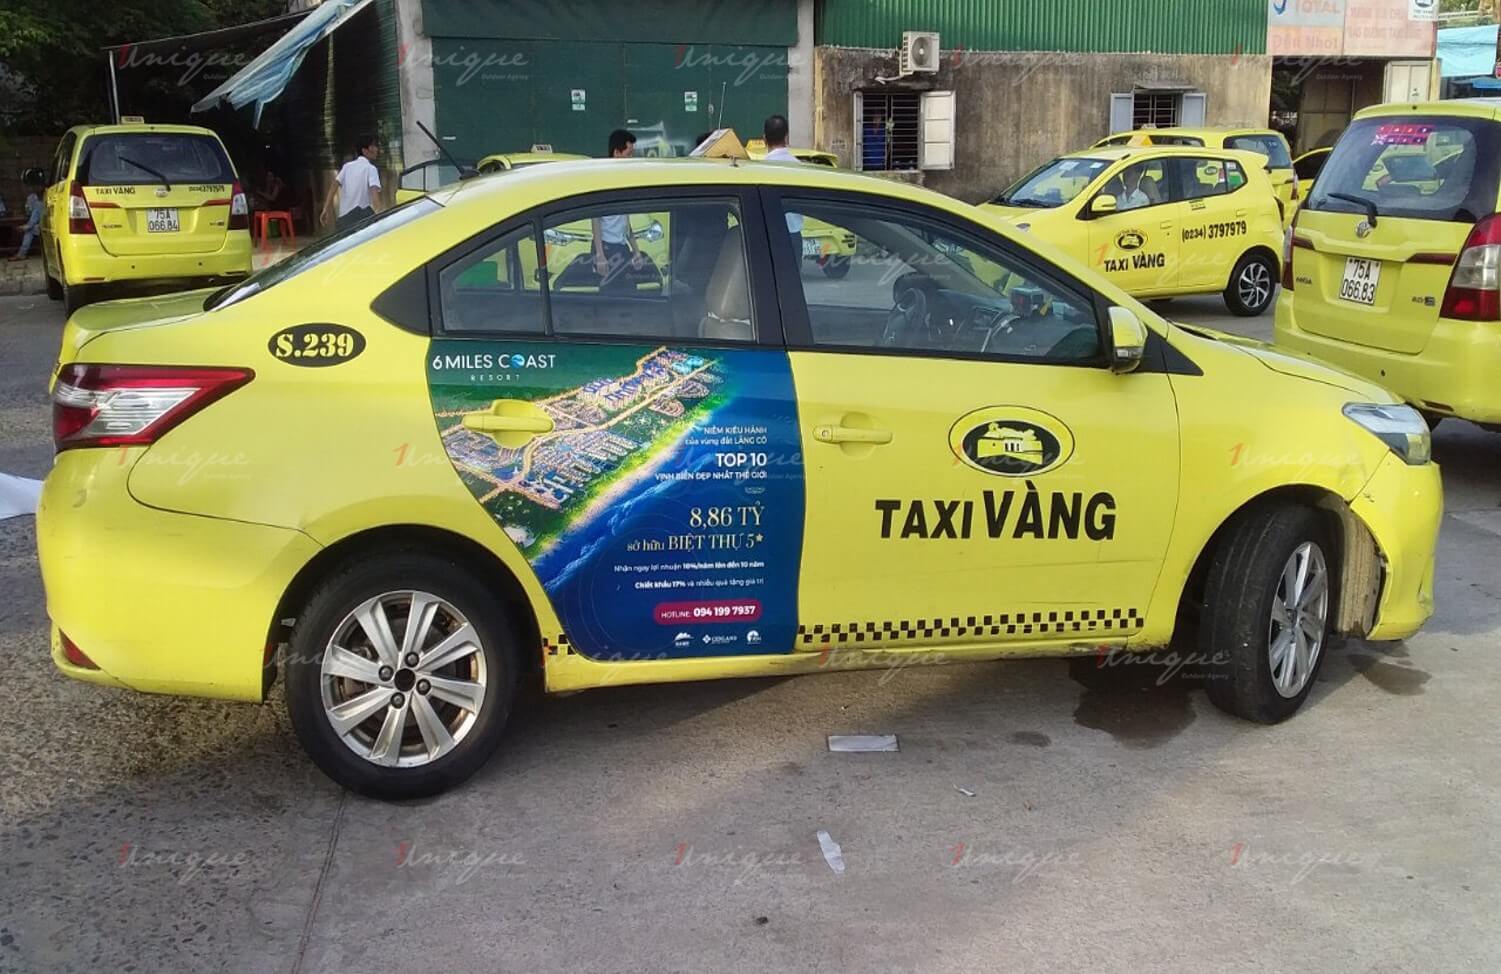 6 Miles Coast Resort triển khai chiến dịch quảng cáo trên taxi có quy mô lớn